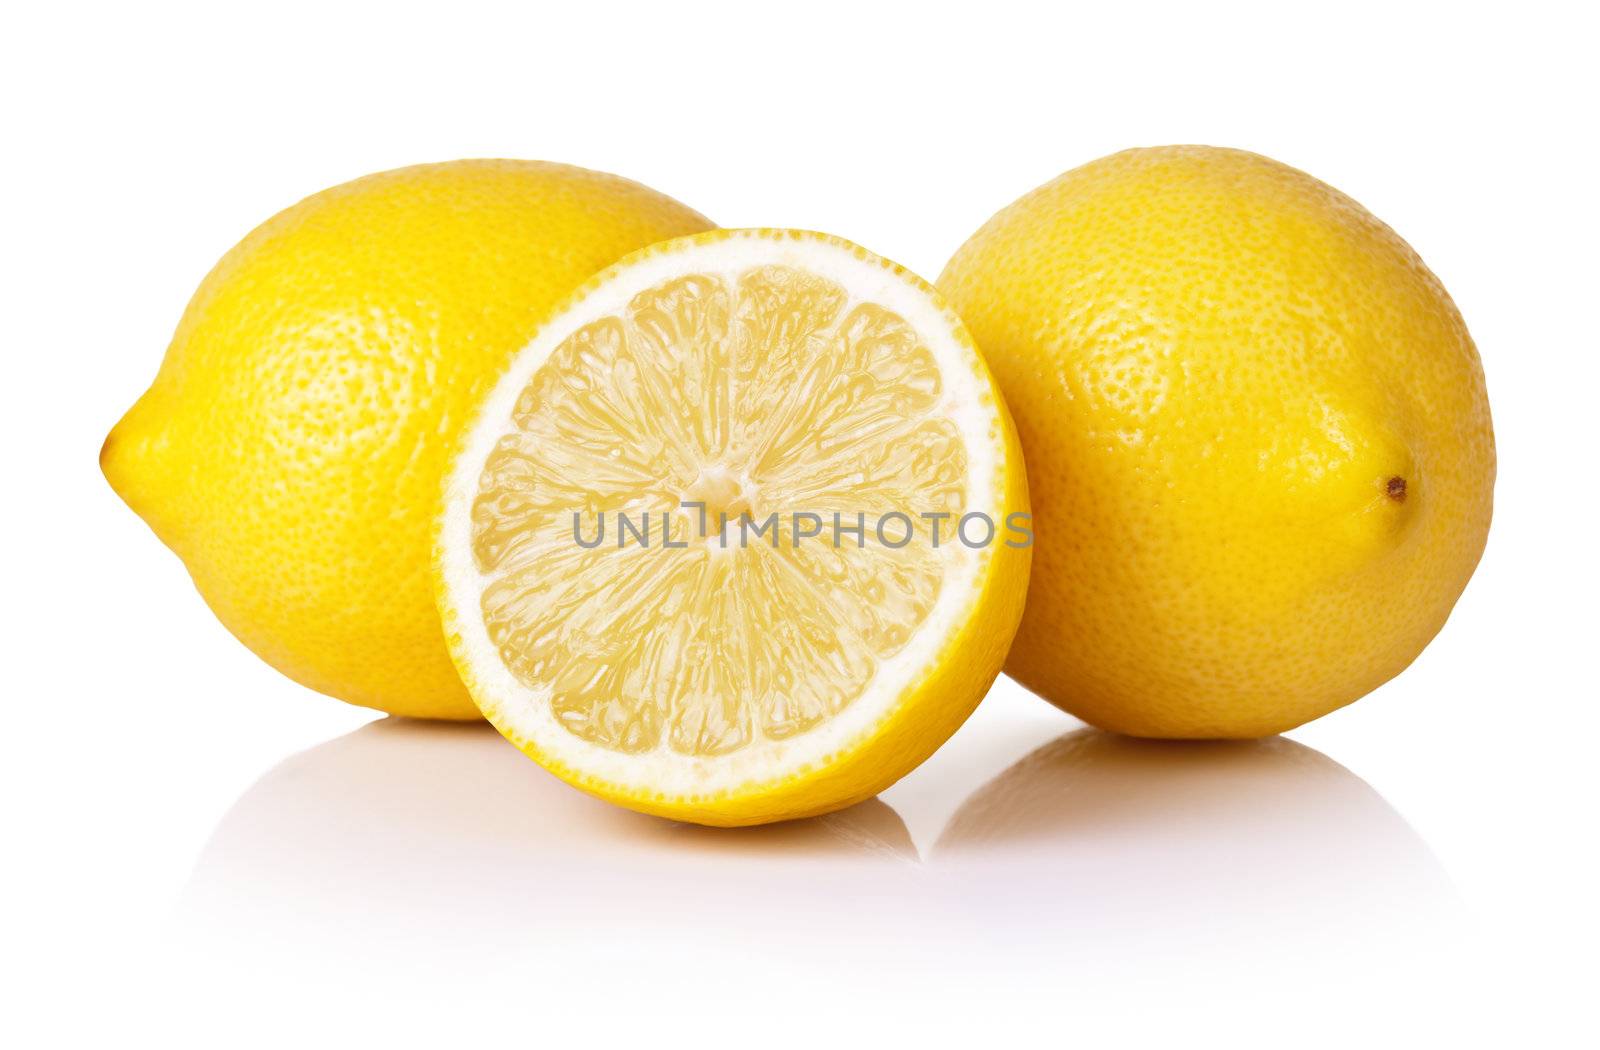 Lemons by bozena_fulawka